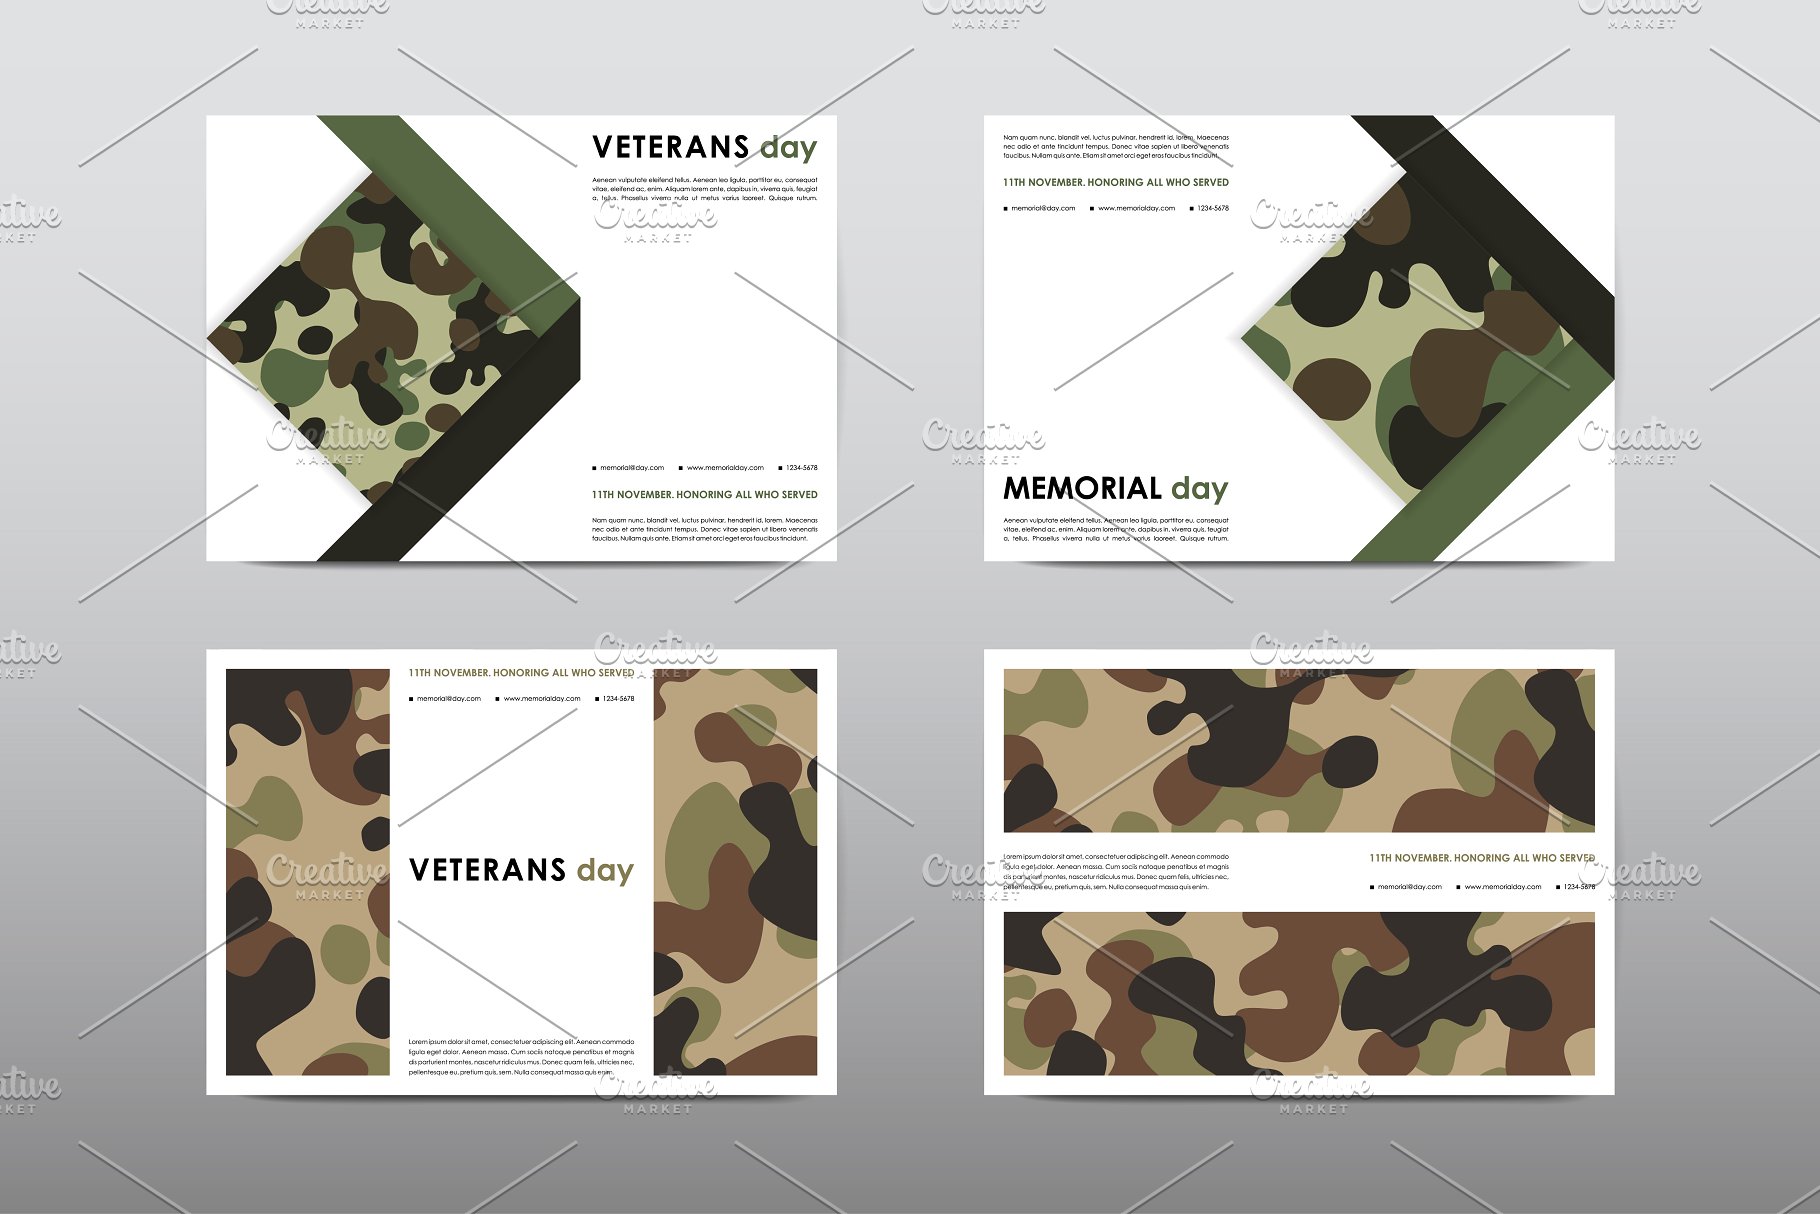 40+老兵节军人宣传小册模板 Veteran’s Day Brochures Bundle插图(37)